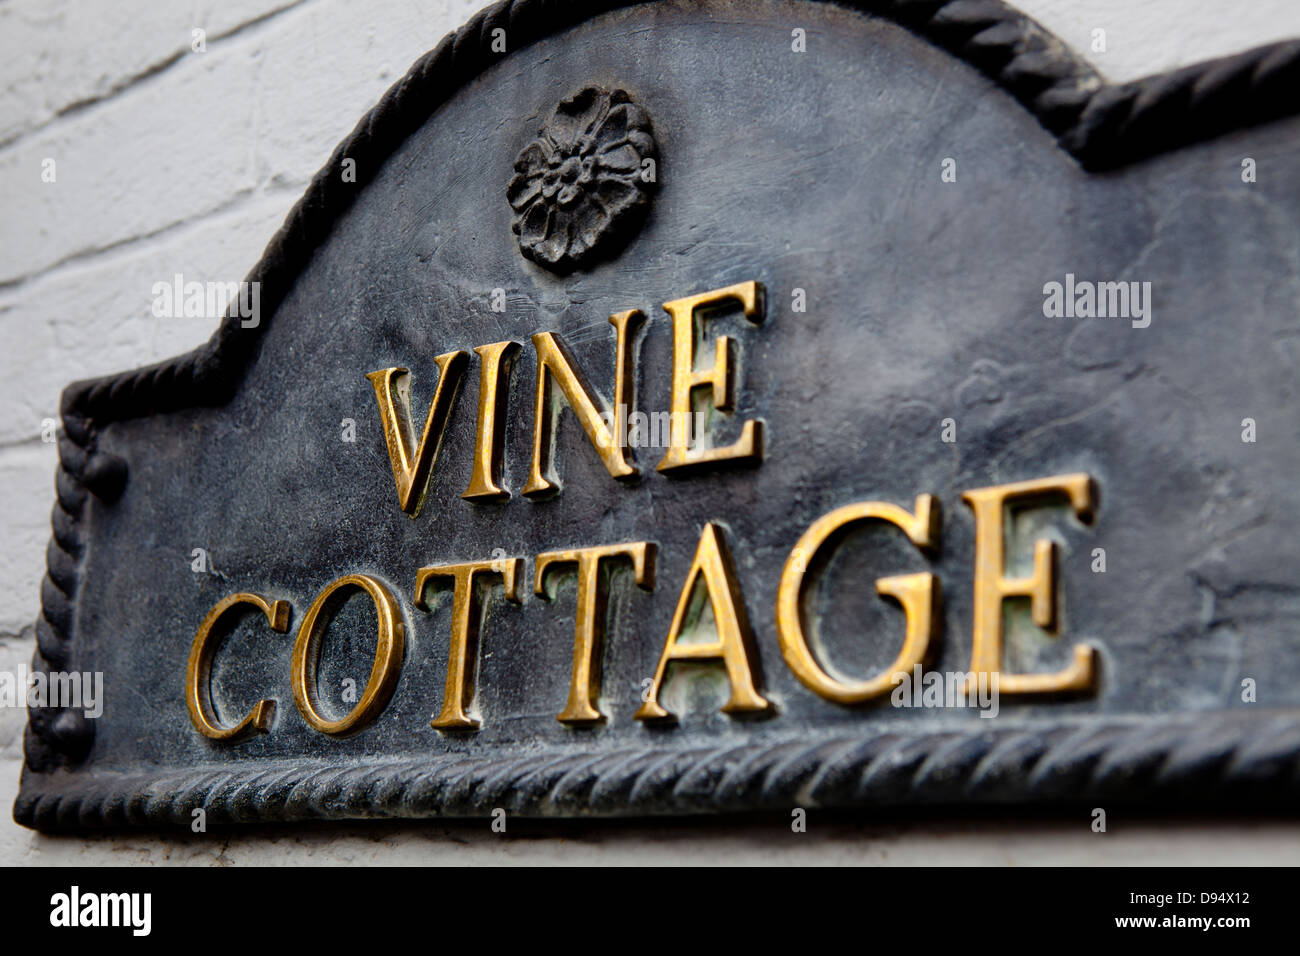 Vine cottage cottage anglais vieille plaque Banque D'Images